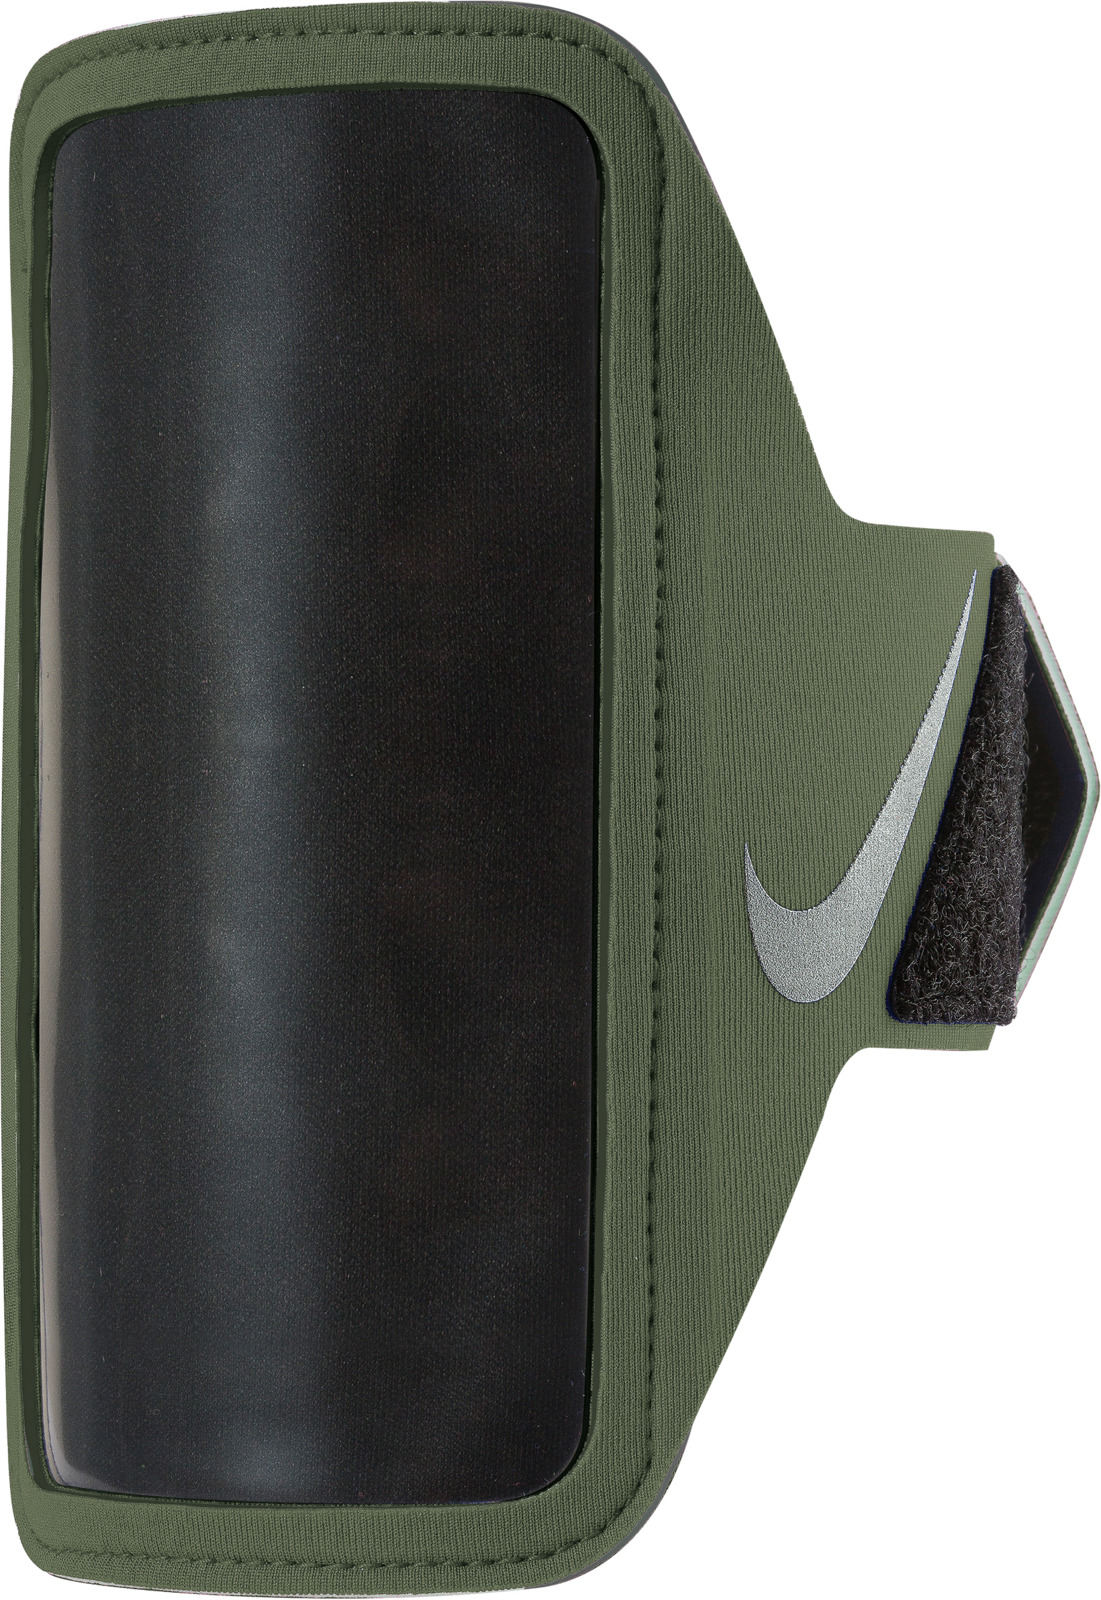 Чехол для телефона на руку Nike, цвет: оливковый, серебряный